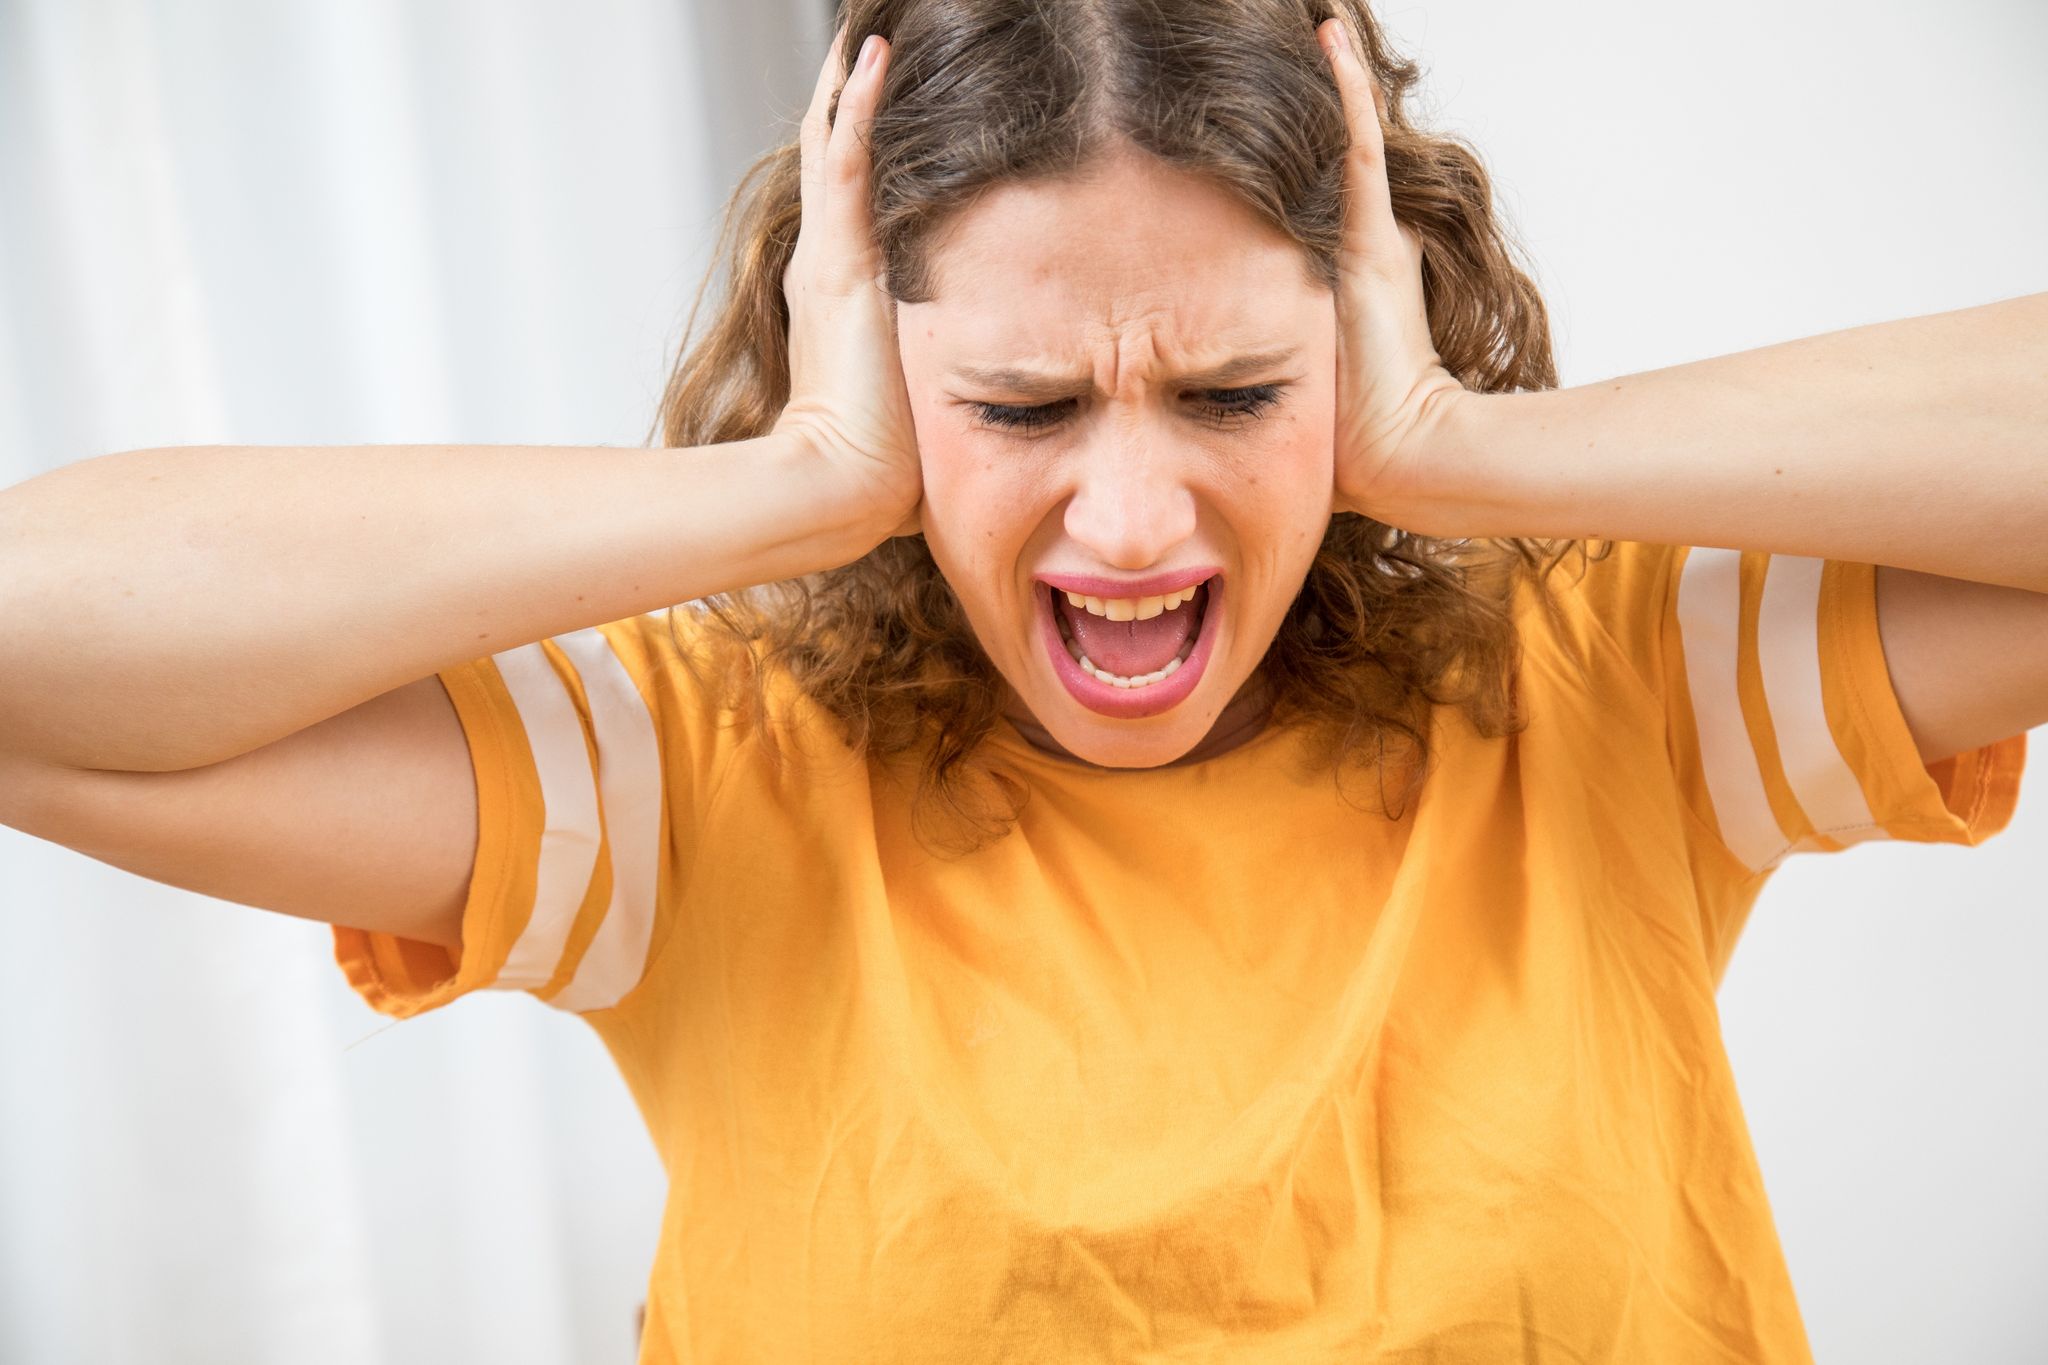 Nützt Schreien? Eine neue Studie zeigt, welche Methoden tatsächlich helfen, die Wut zu dämpfen - und welche eher kontraproduktiv sind.